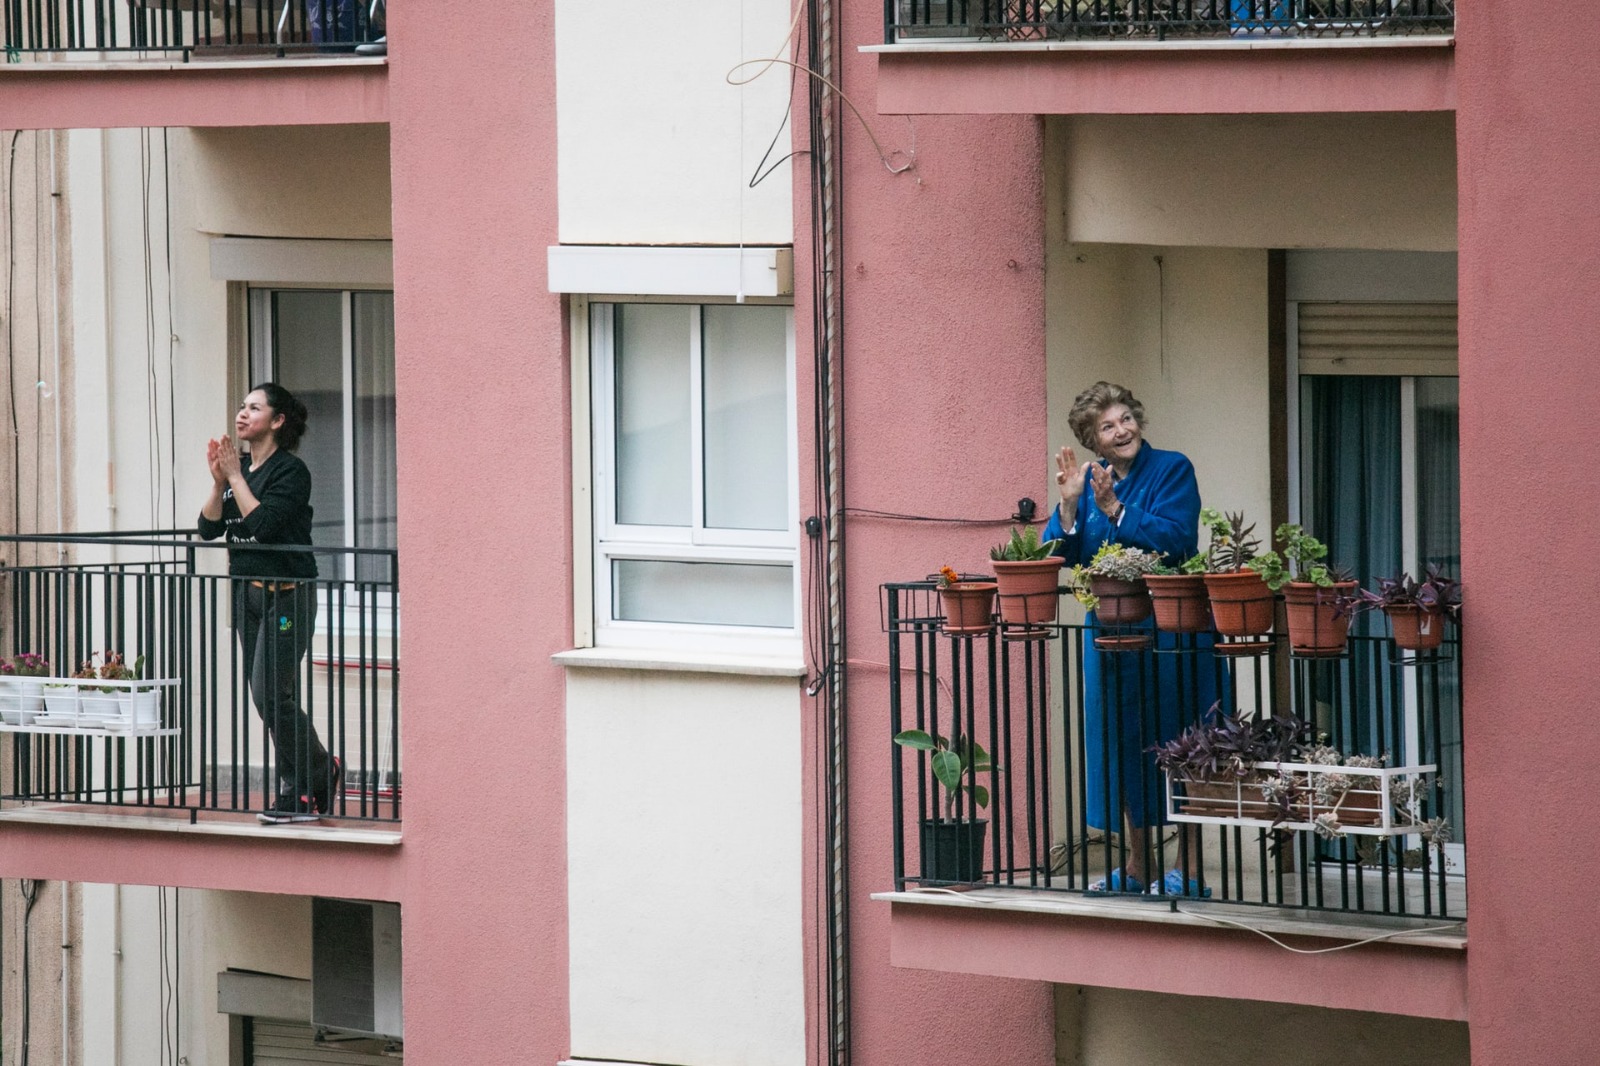 Twee mensen op hun eigen balkon. Ze klappen en kijken om zich heen.